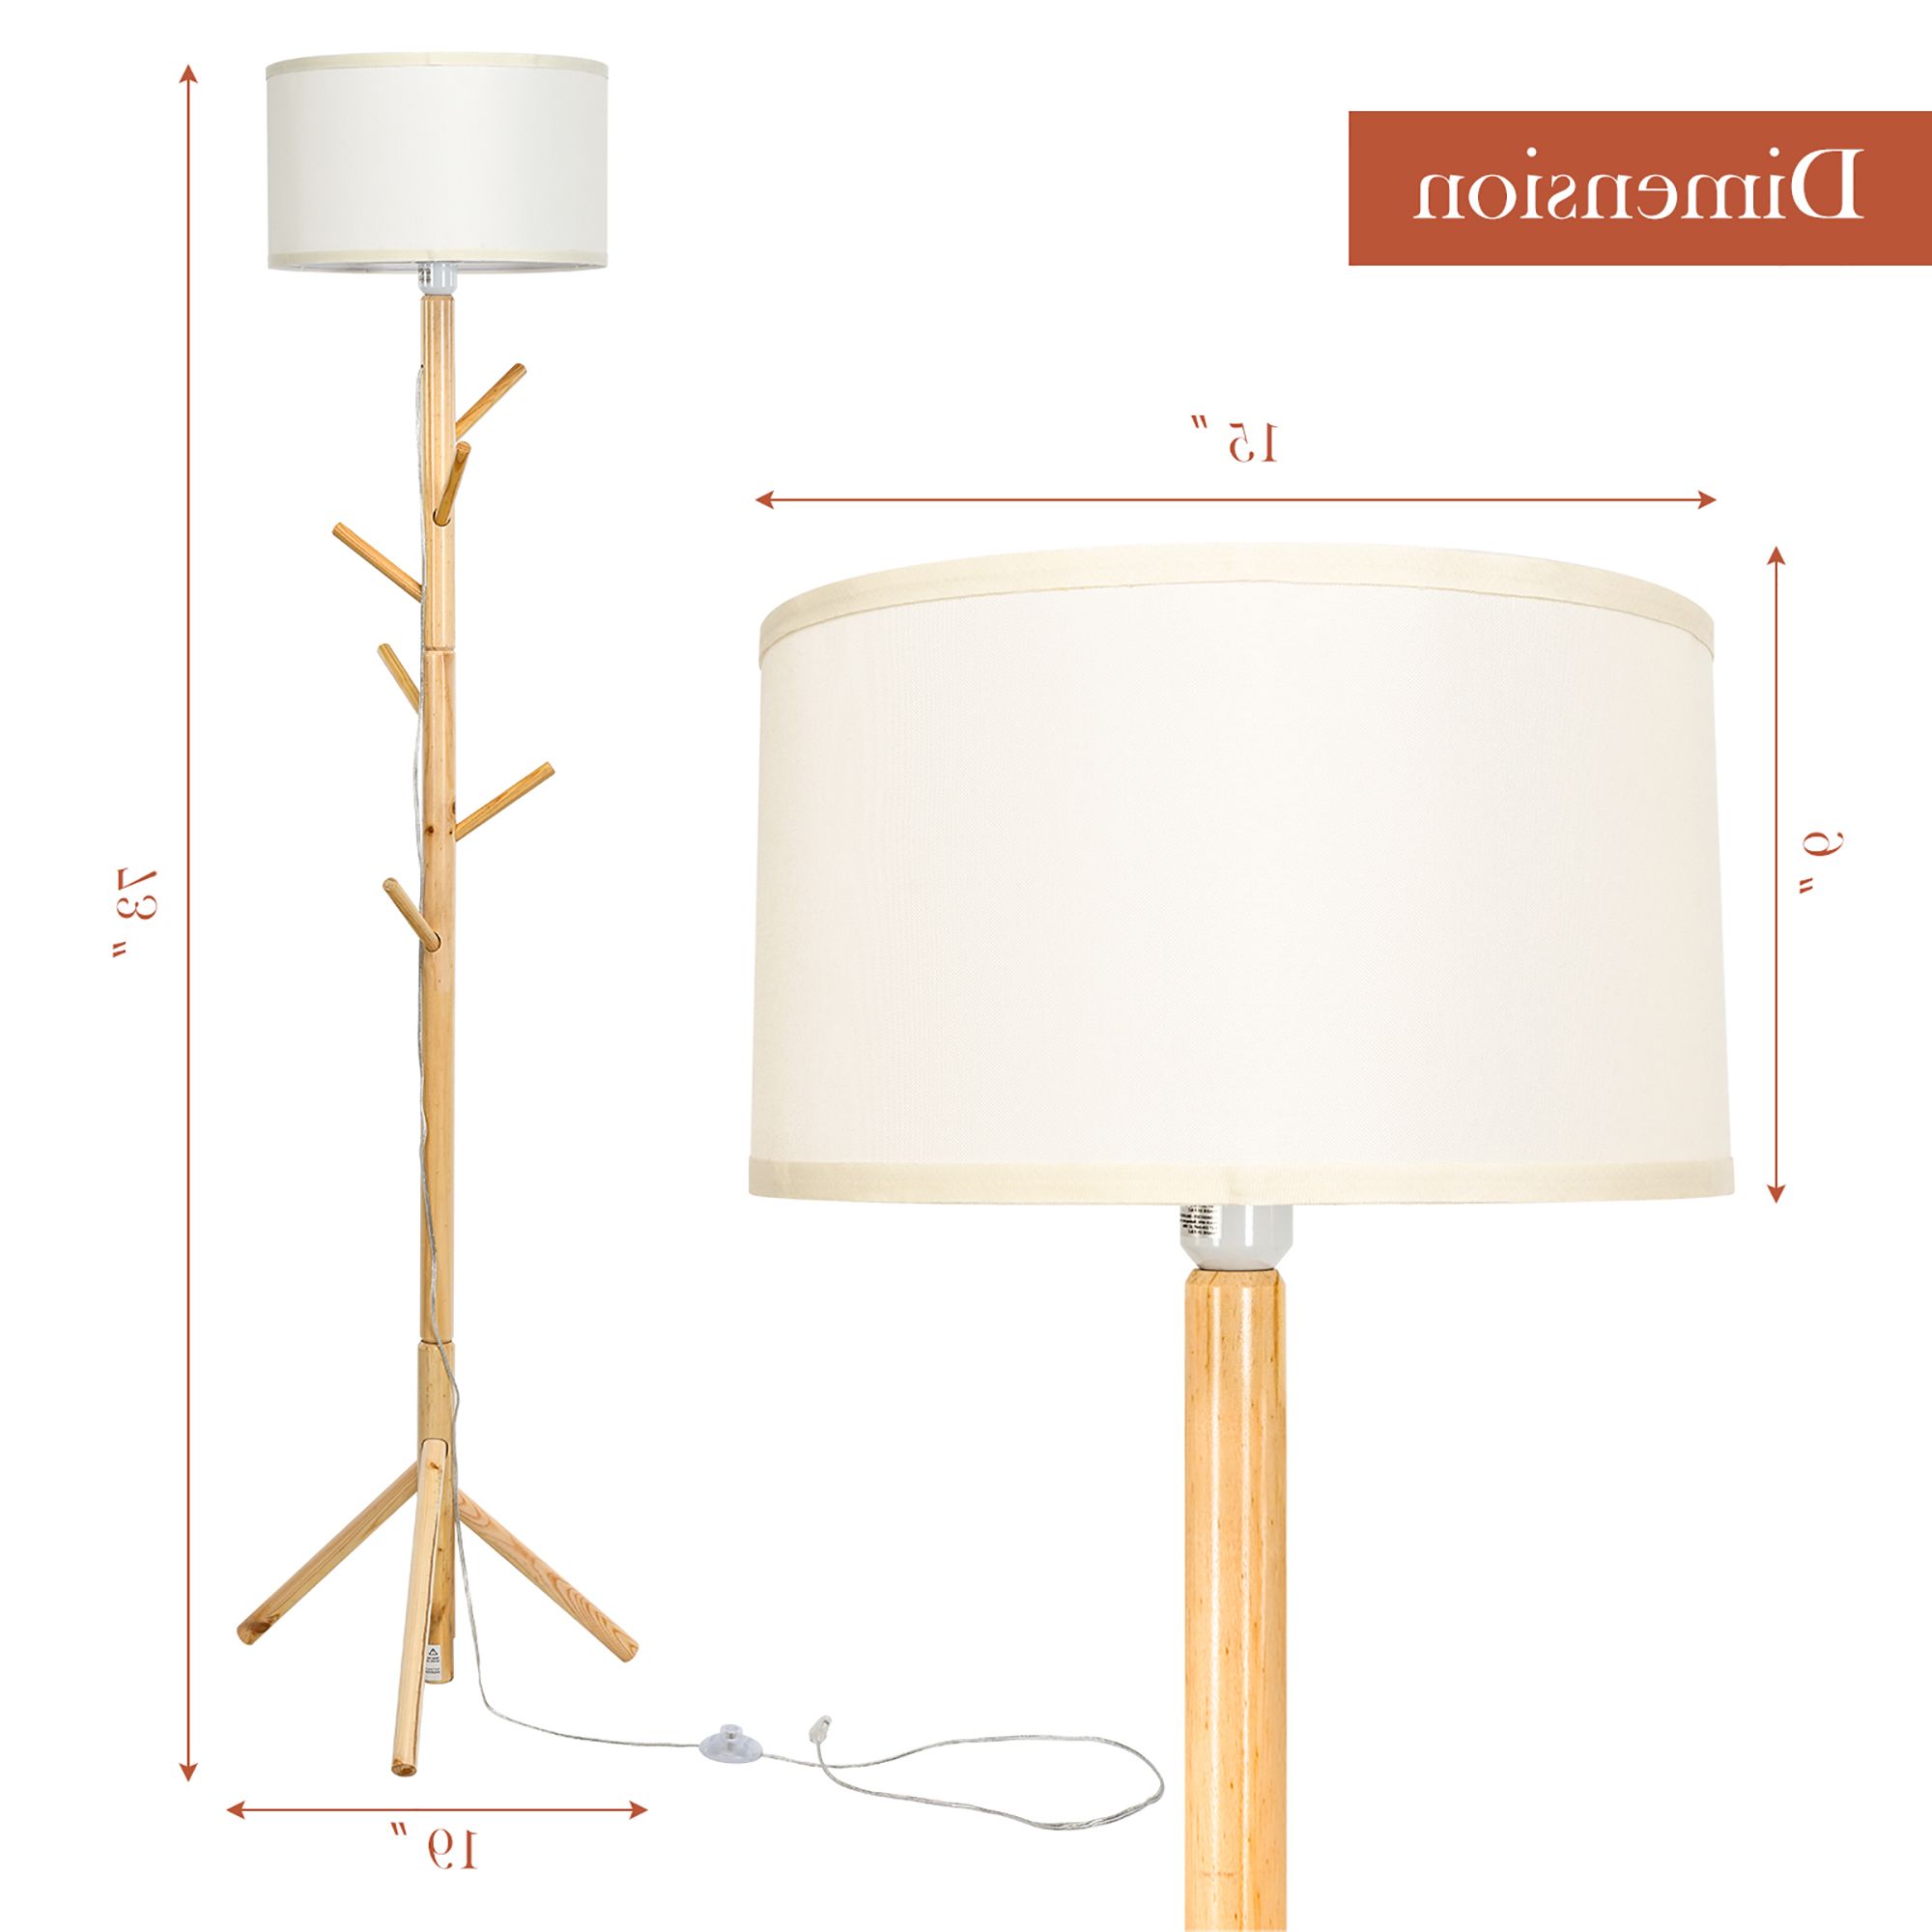 Pine Wood Standing Lamps Regarding Most Up To Date Costway Modern Wood Tripod Standing Floor Lamp Coat Rack For Living Room  Bedroom – Walmart (View 12 of 15)